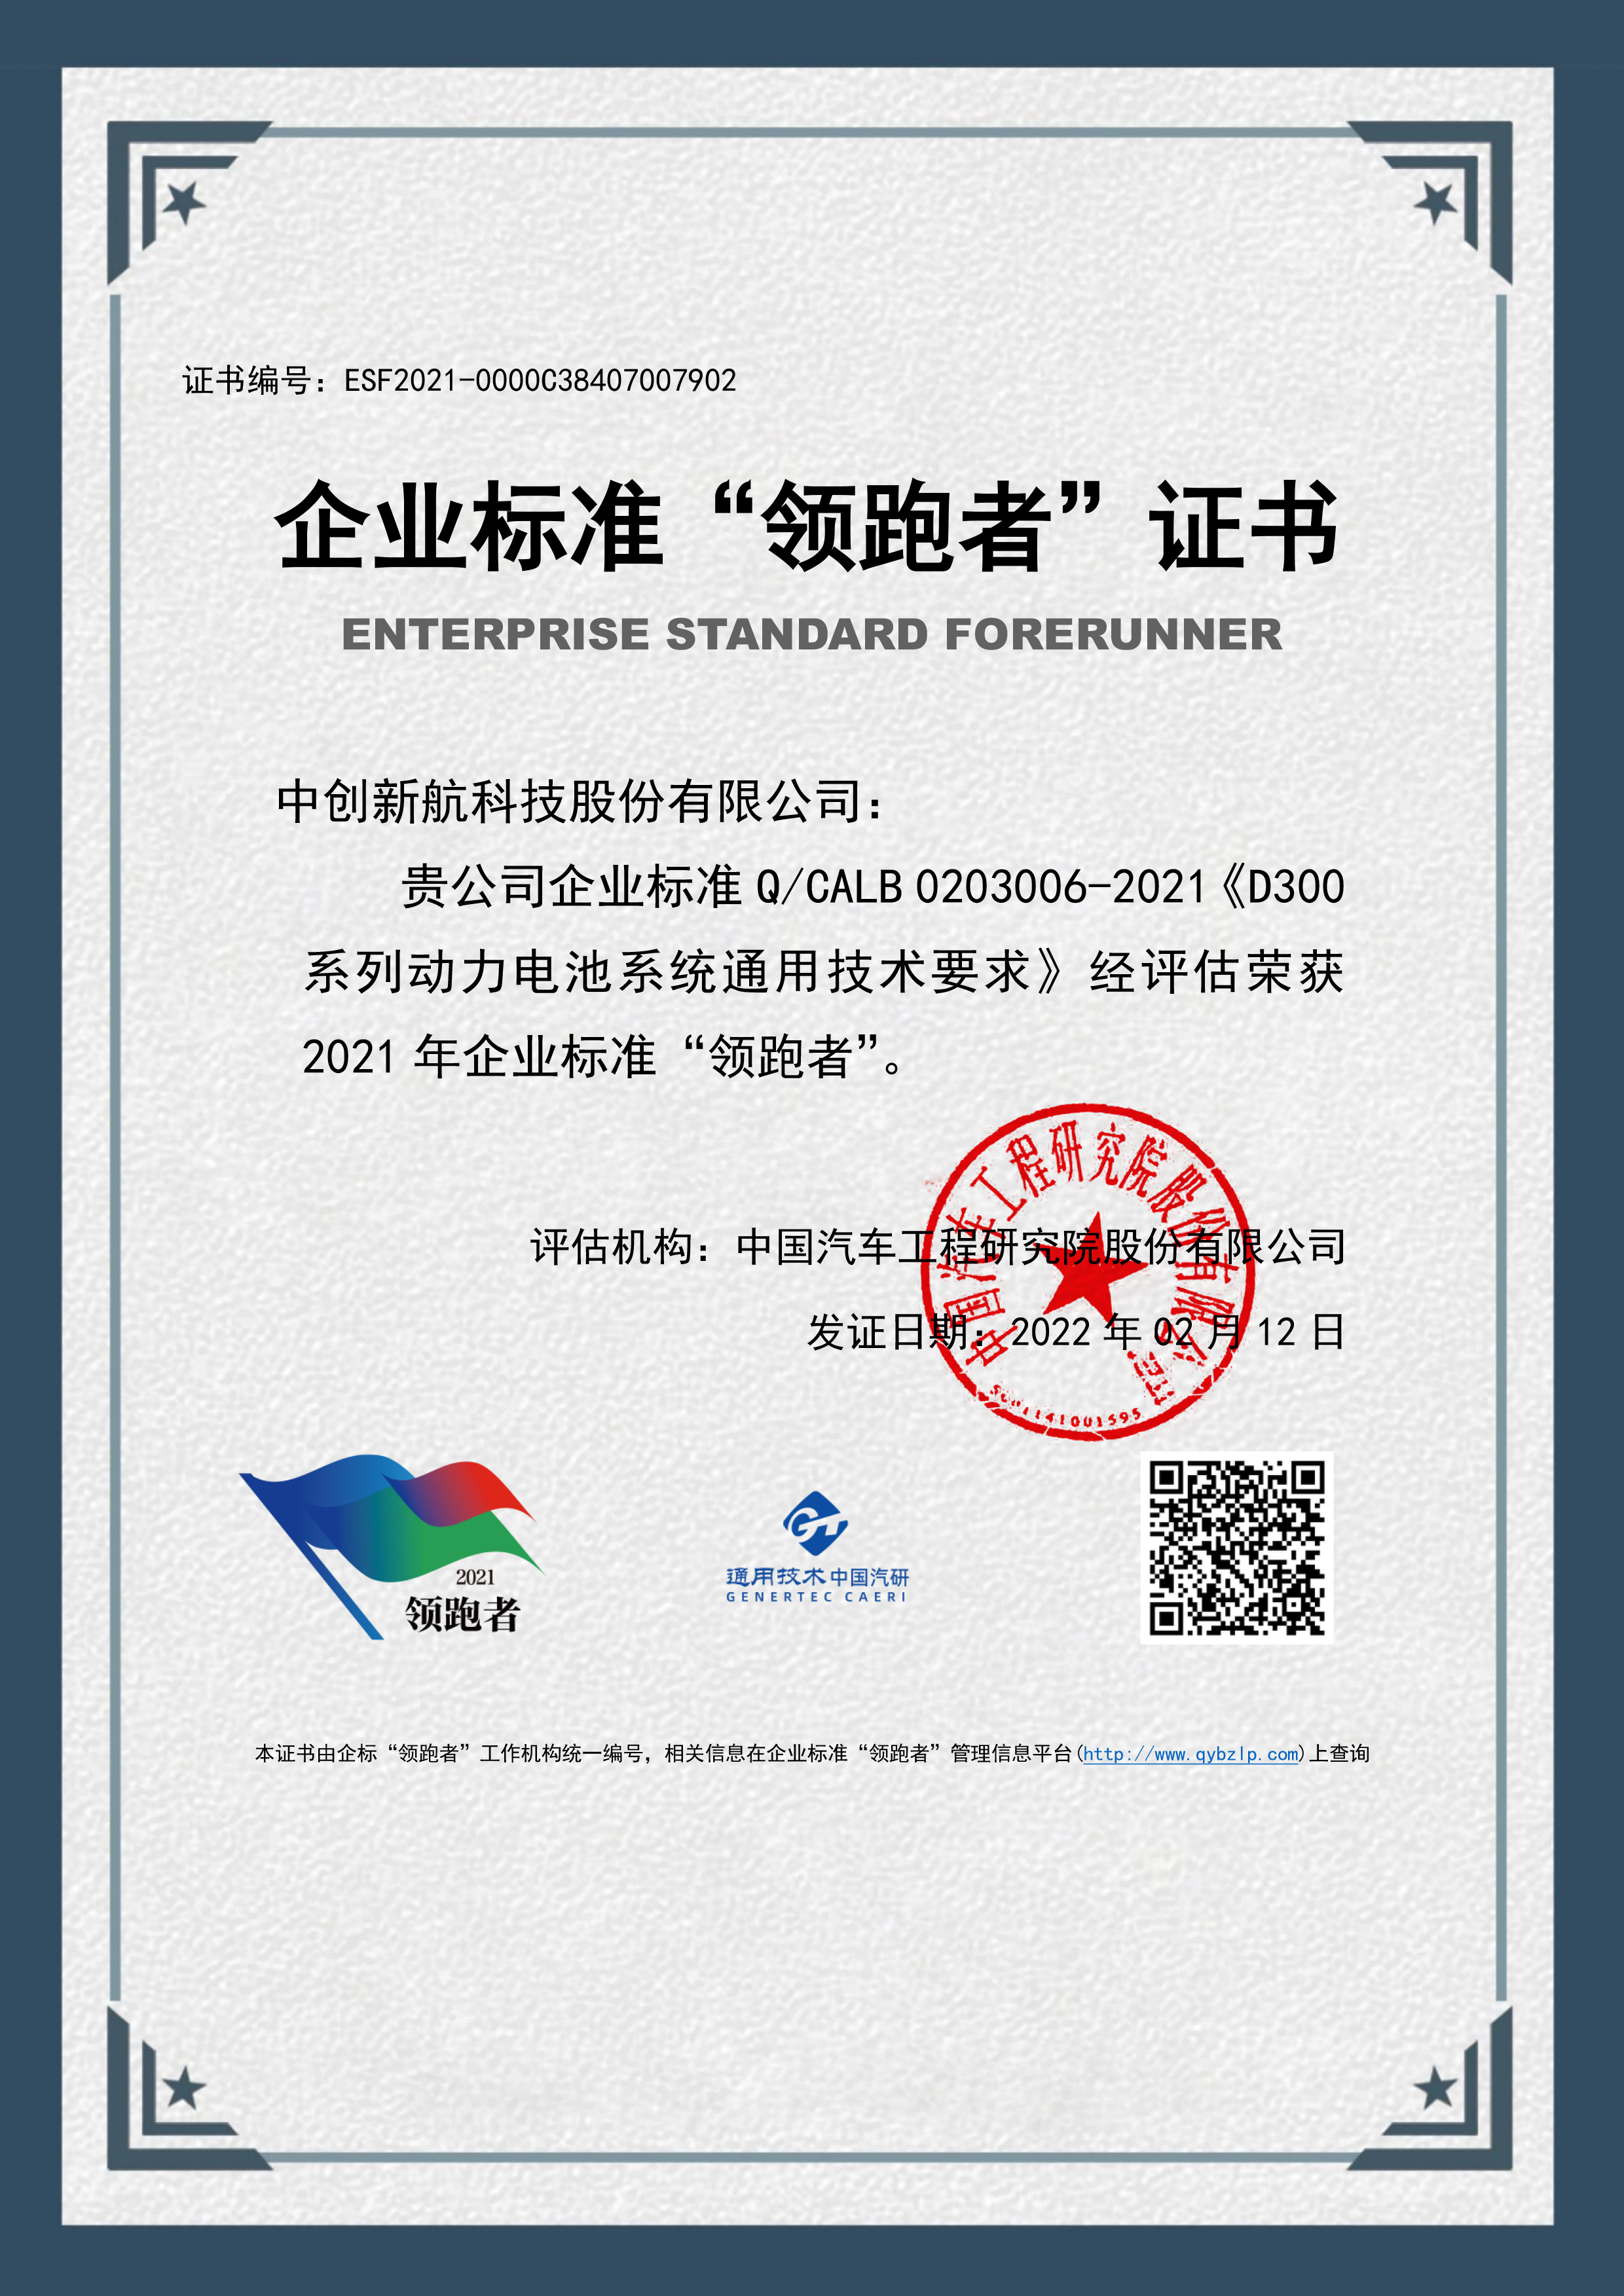 江蘇省唯一 | 中創新航入選國家企業標準“領跑者”